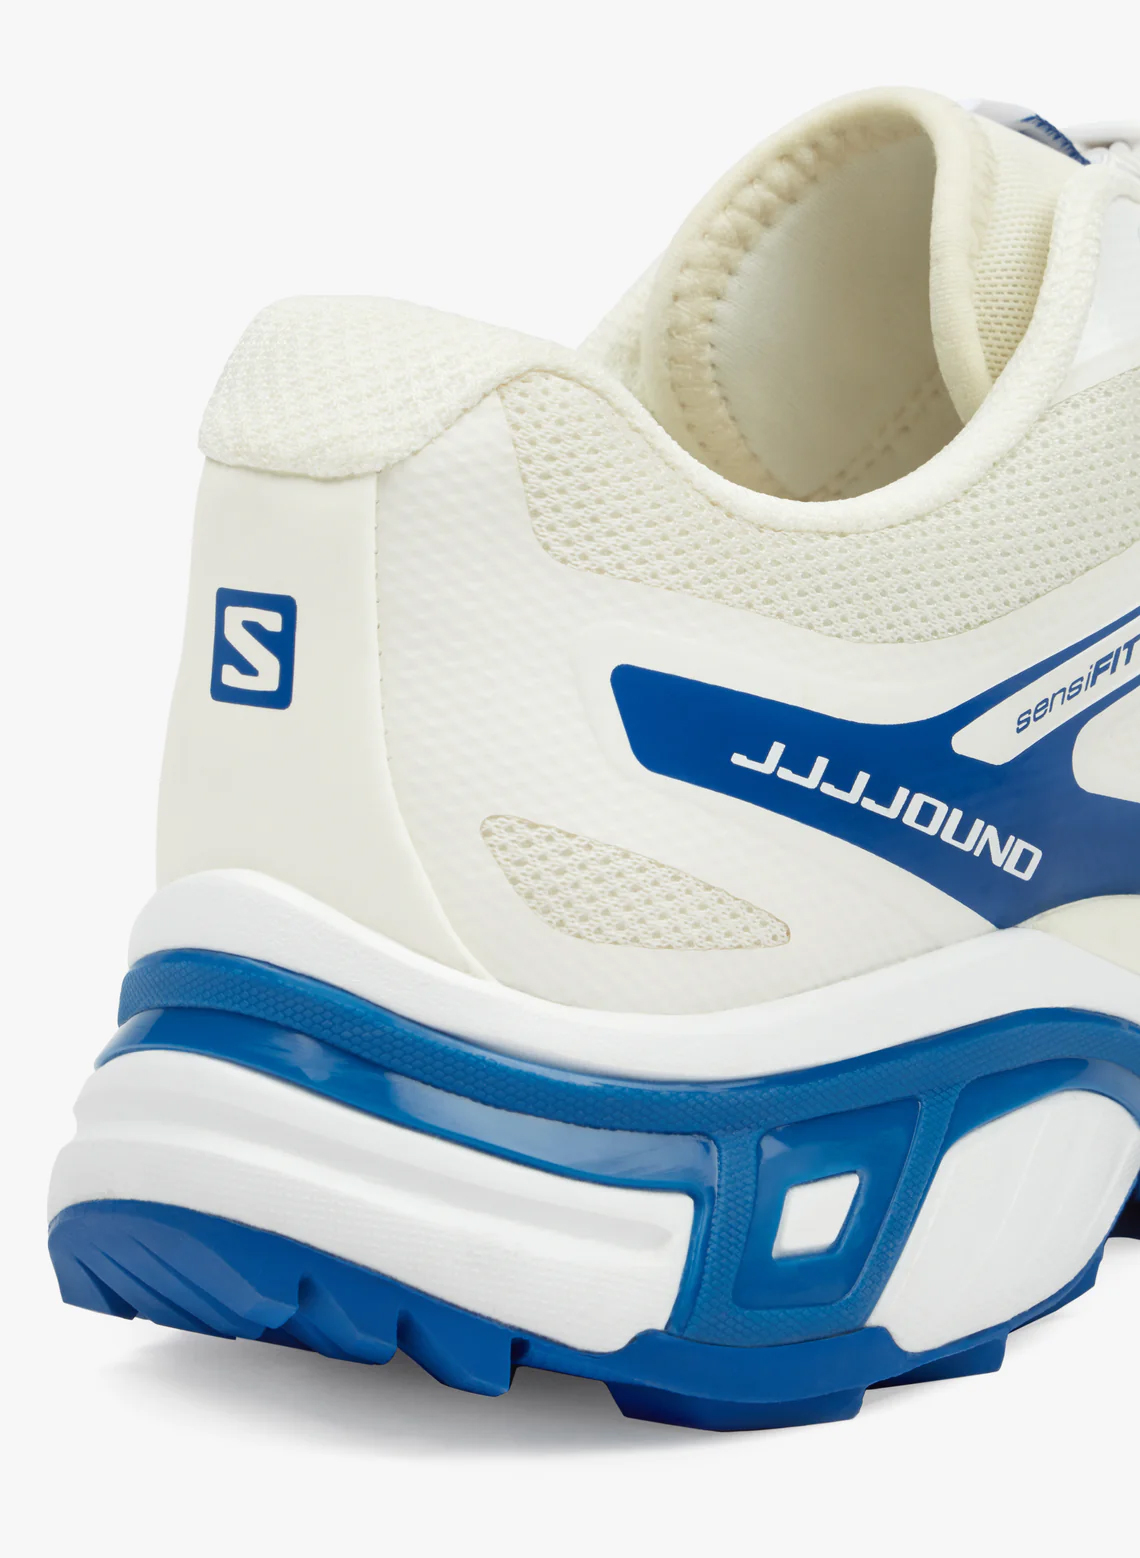 JJJJound Salomon XT Wings 2 Release Date | SneakerNews.com